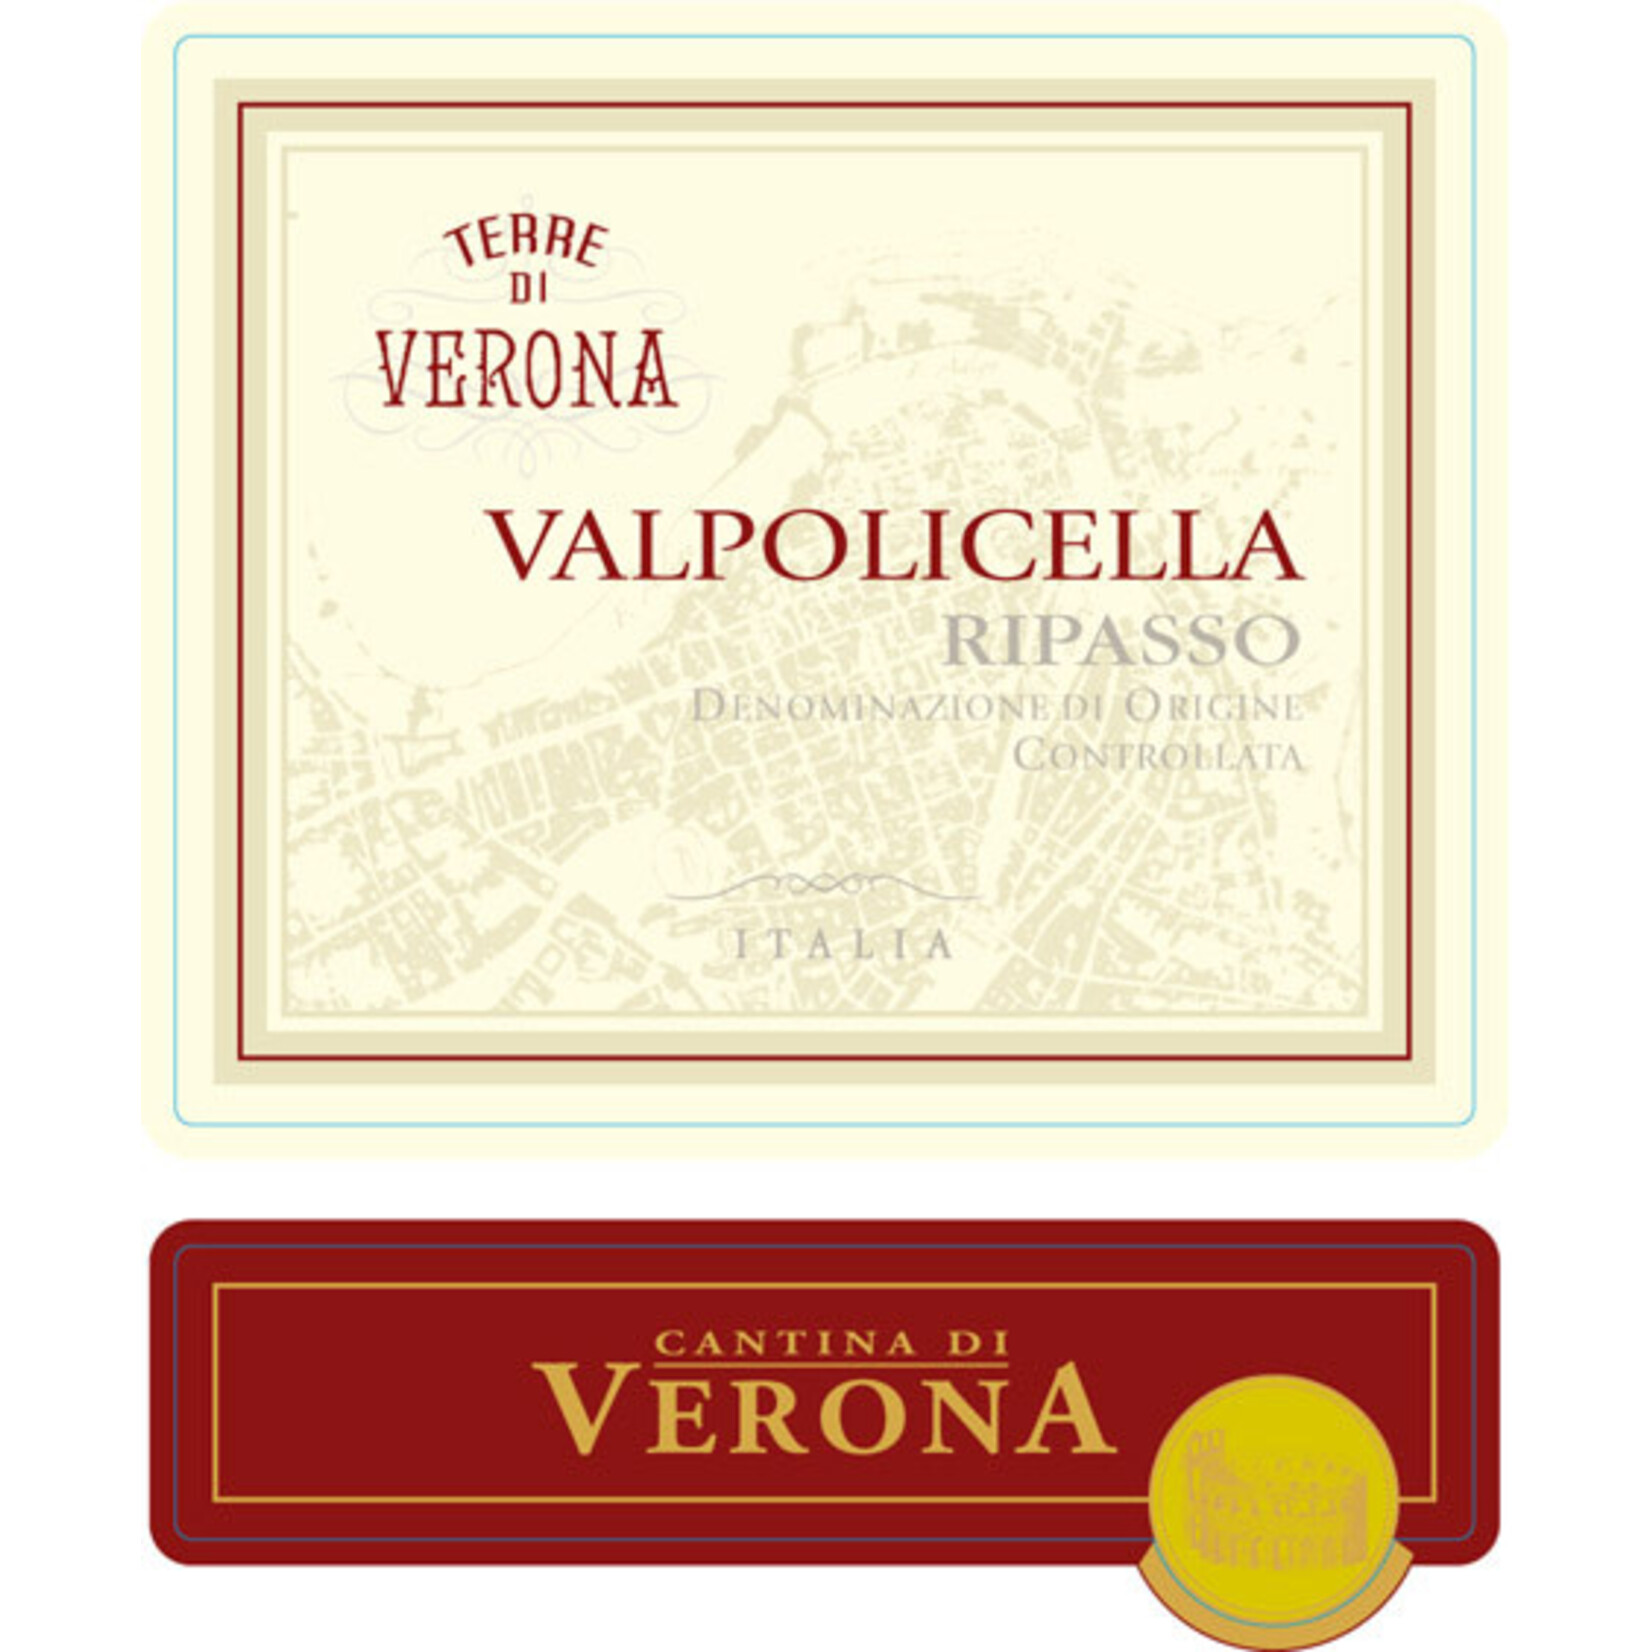 Terre di Verona Terre di Verona "Valpolicella Ripasso Superiore" 2019